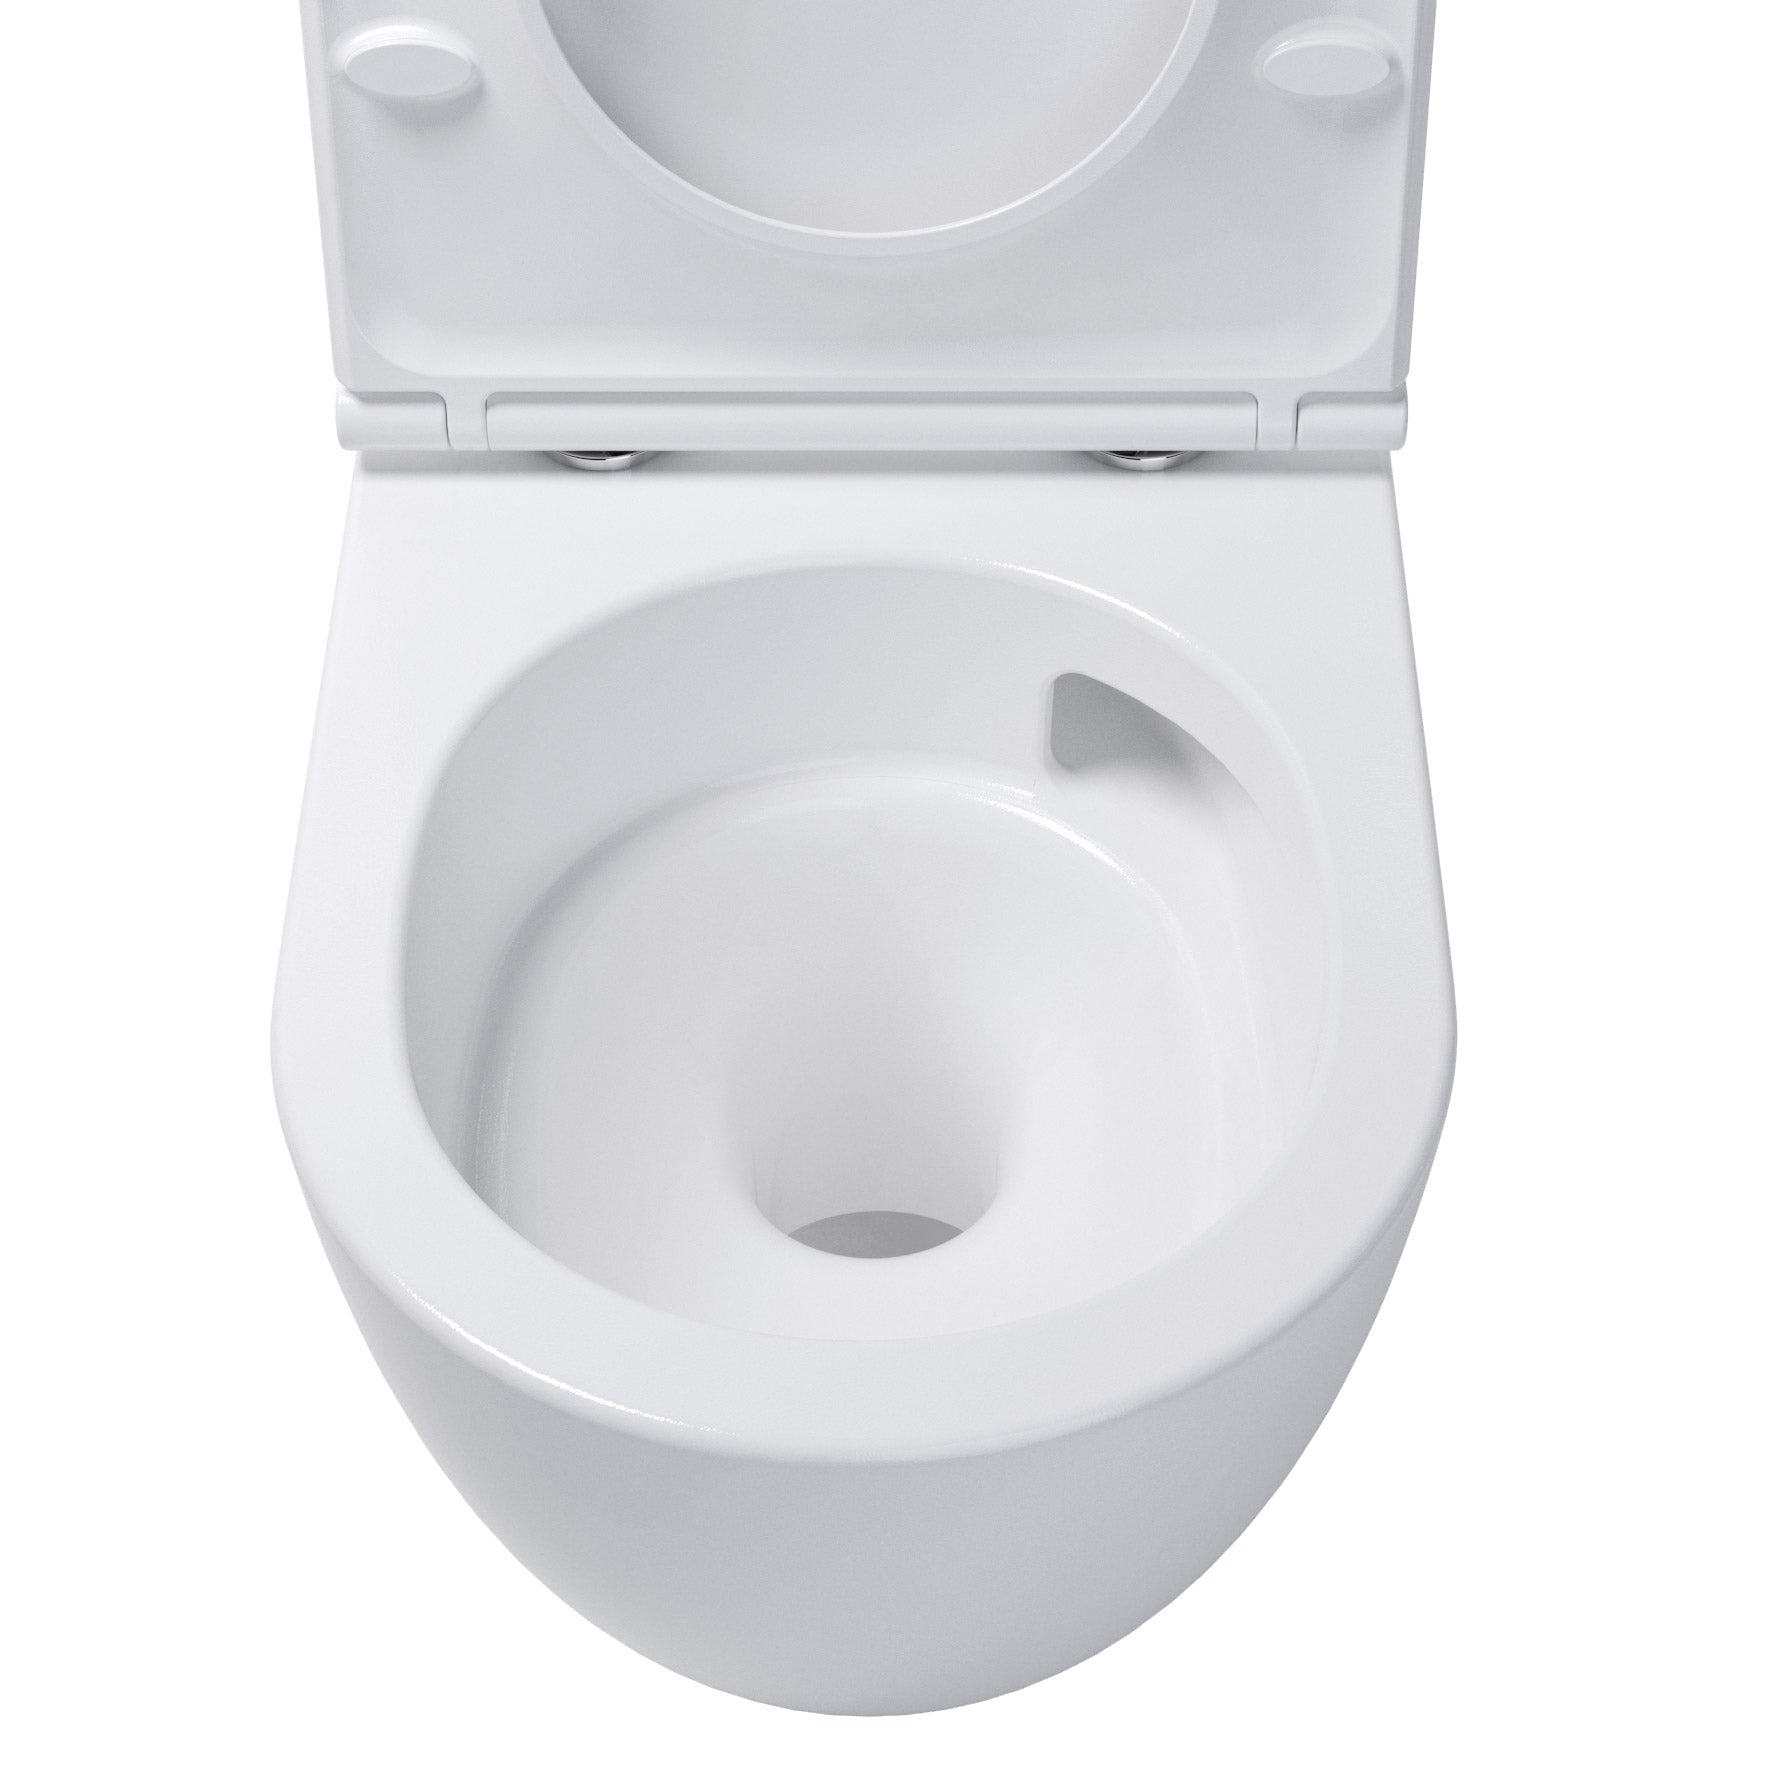 Whirlflush Hänge Wand WC Soho 3.0 Spülrandlos Tornado Spülung Weiß Glanz mit WC-Sitz Toilette